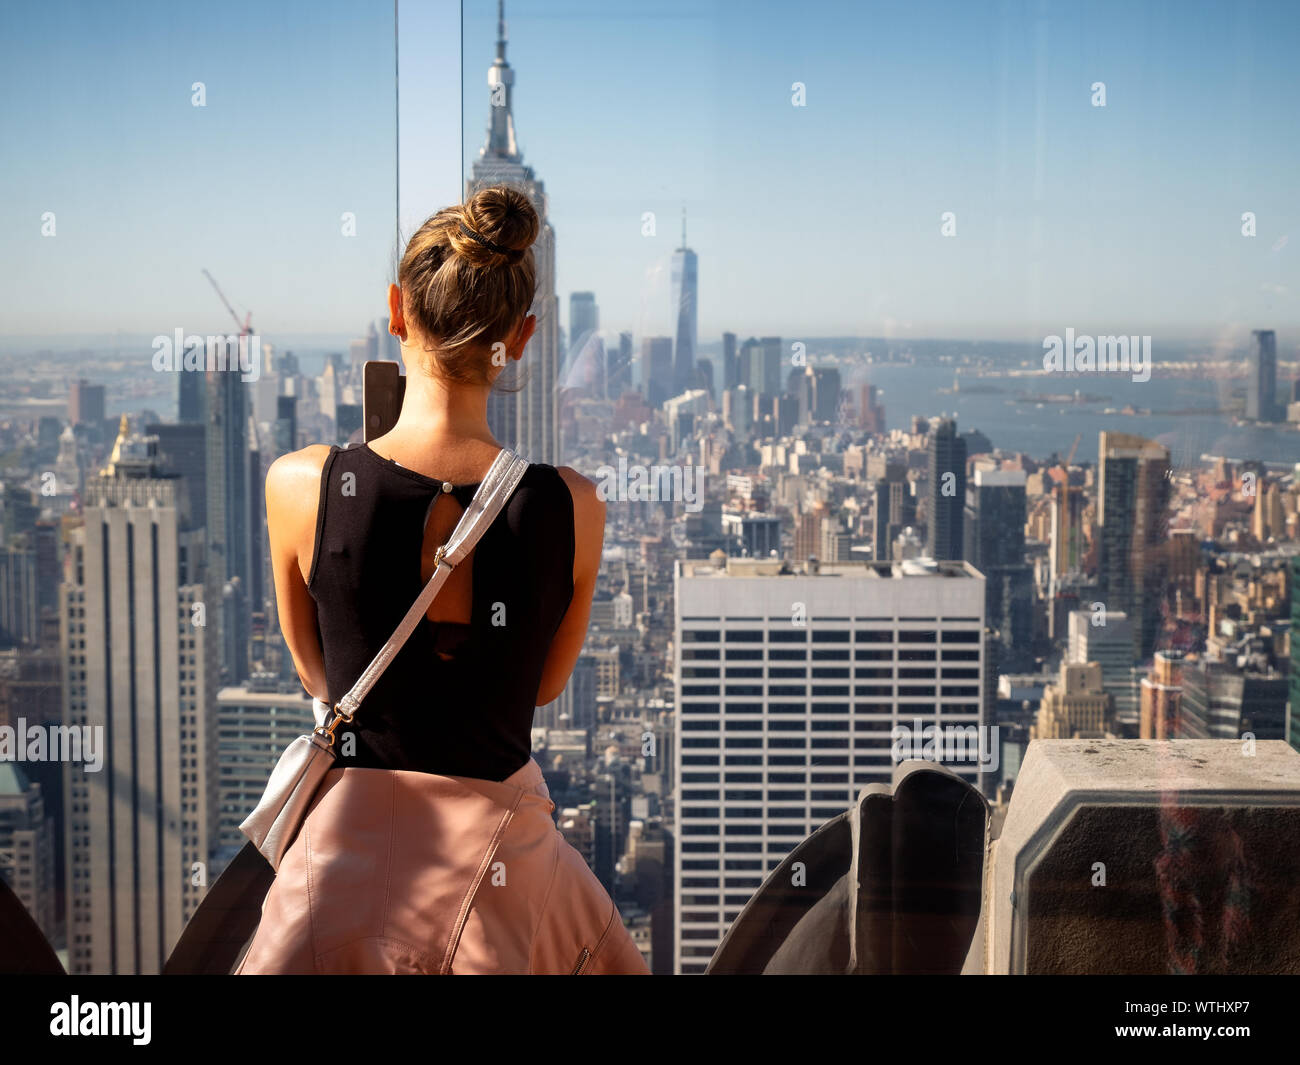 Linda chica tomando fotos de los rascacielos de Manhattan con el Empire State Building en frente, Nueva York, EE.UU. Foto de stock